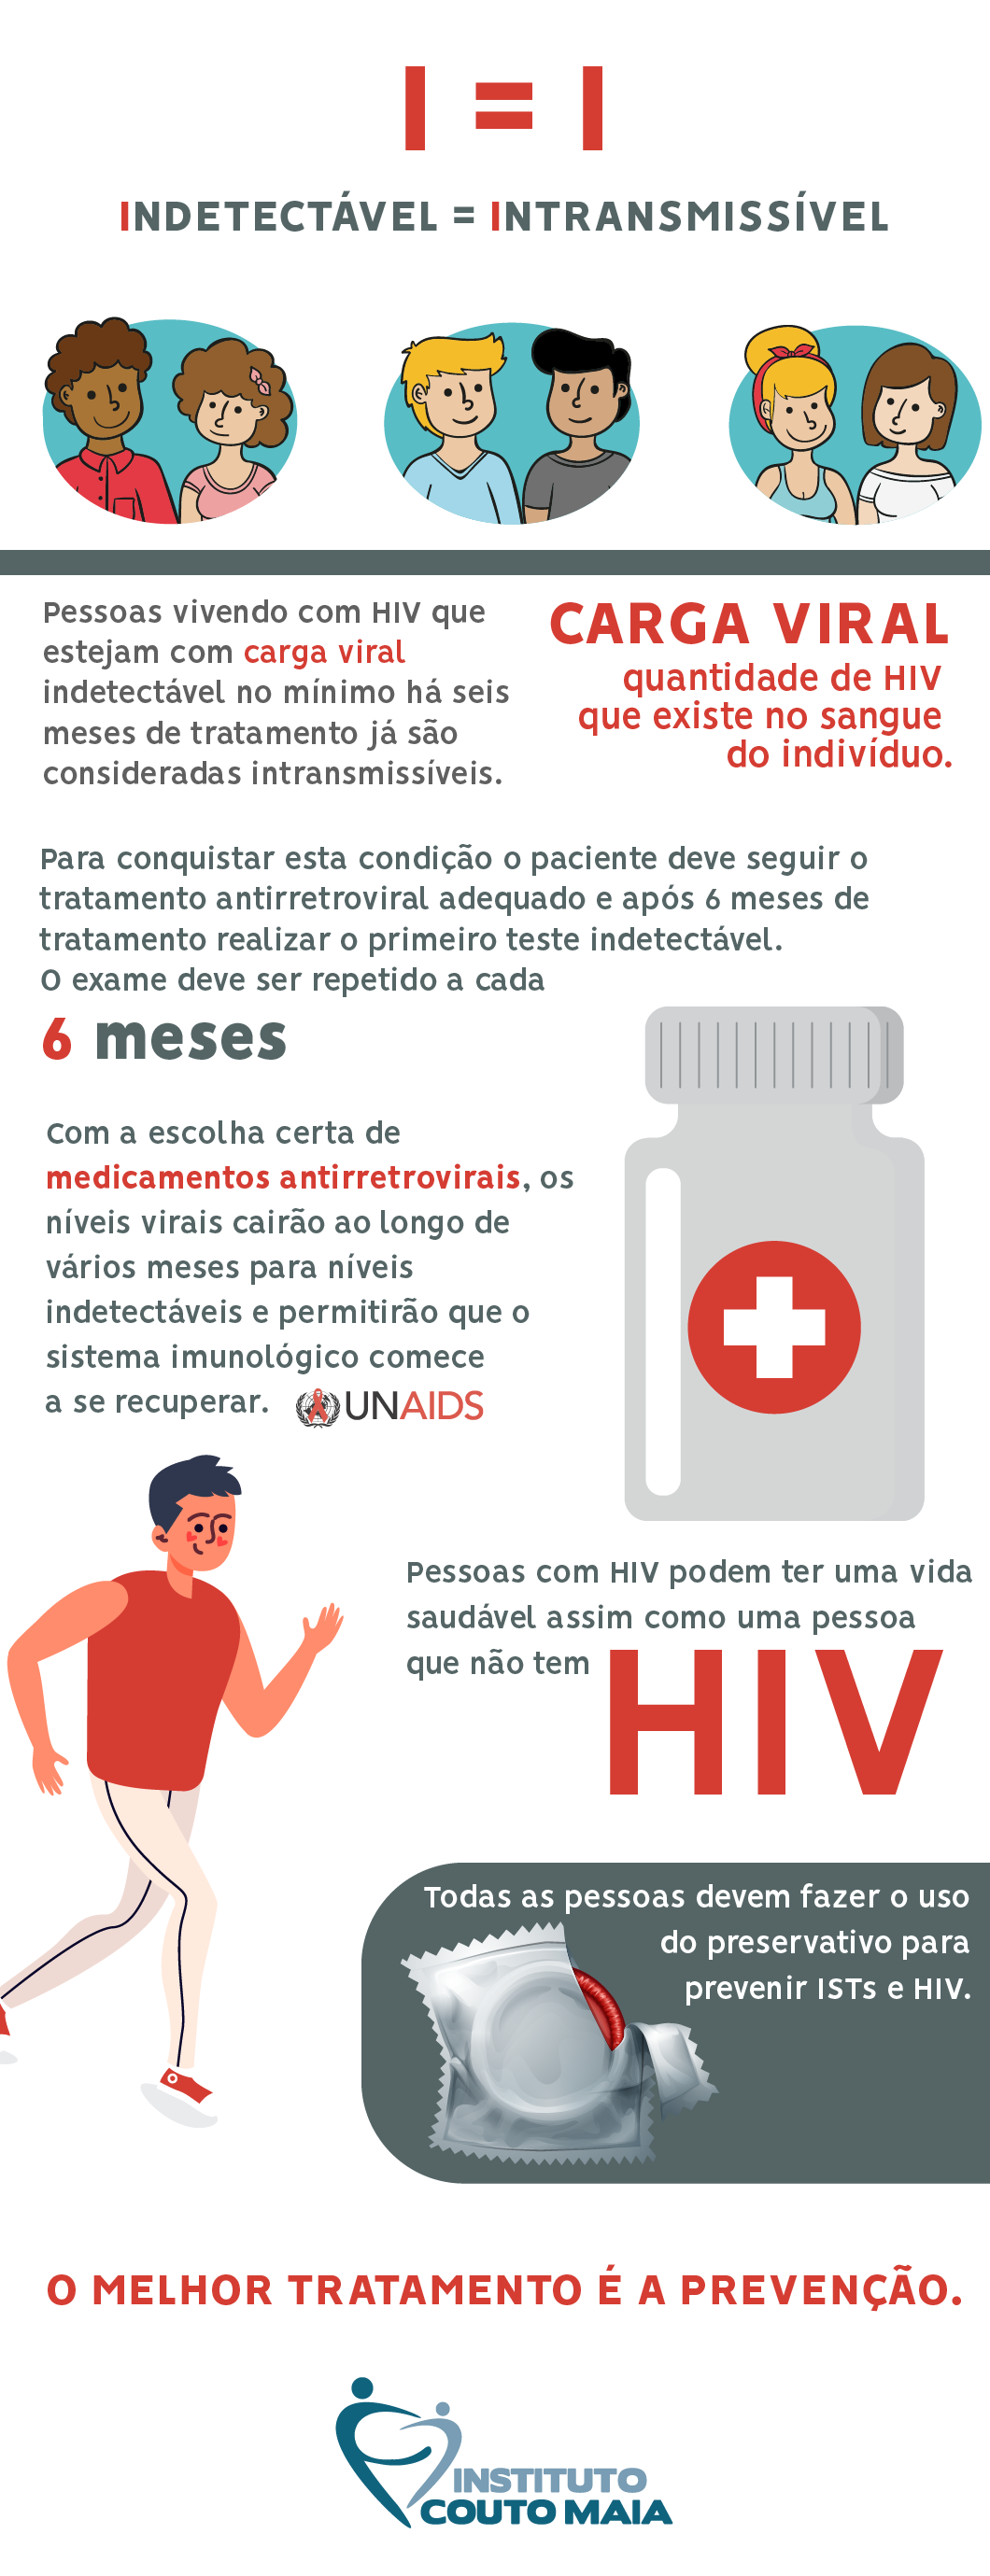 3 xeques contra o HIV